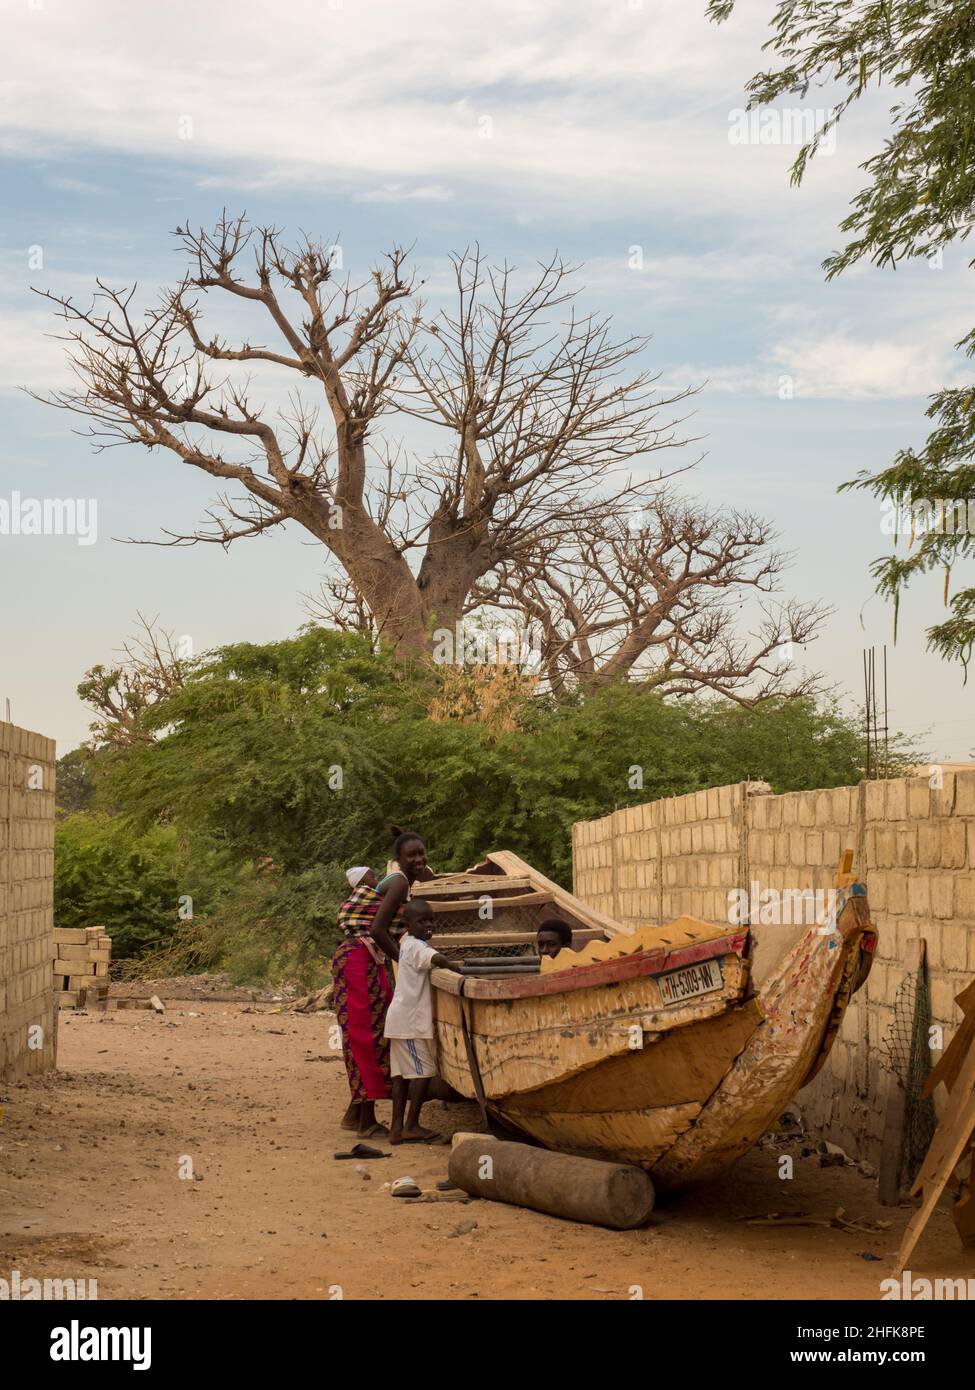 Sénégal, Afrique - 24 janvier 2019 : un énorme baobab et un bateau en bois sur la route rouge africaine.Arbre du bonheur, Sénégal.Afrique. Banque D'Images